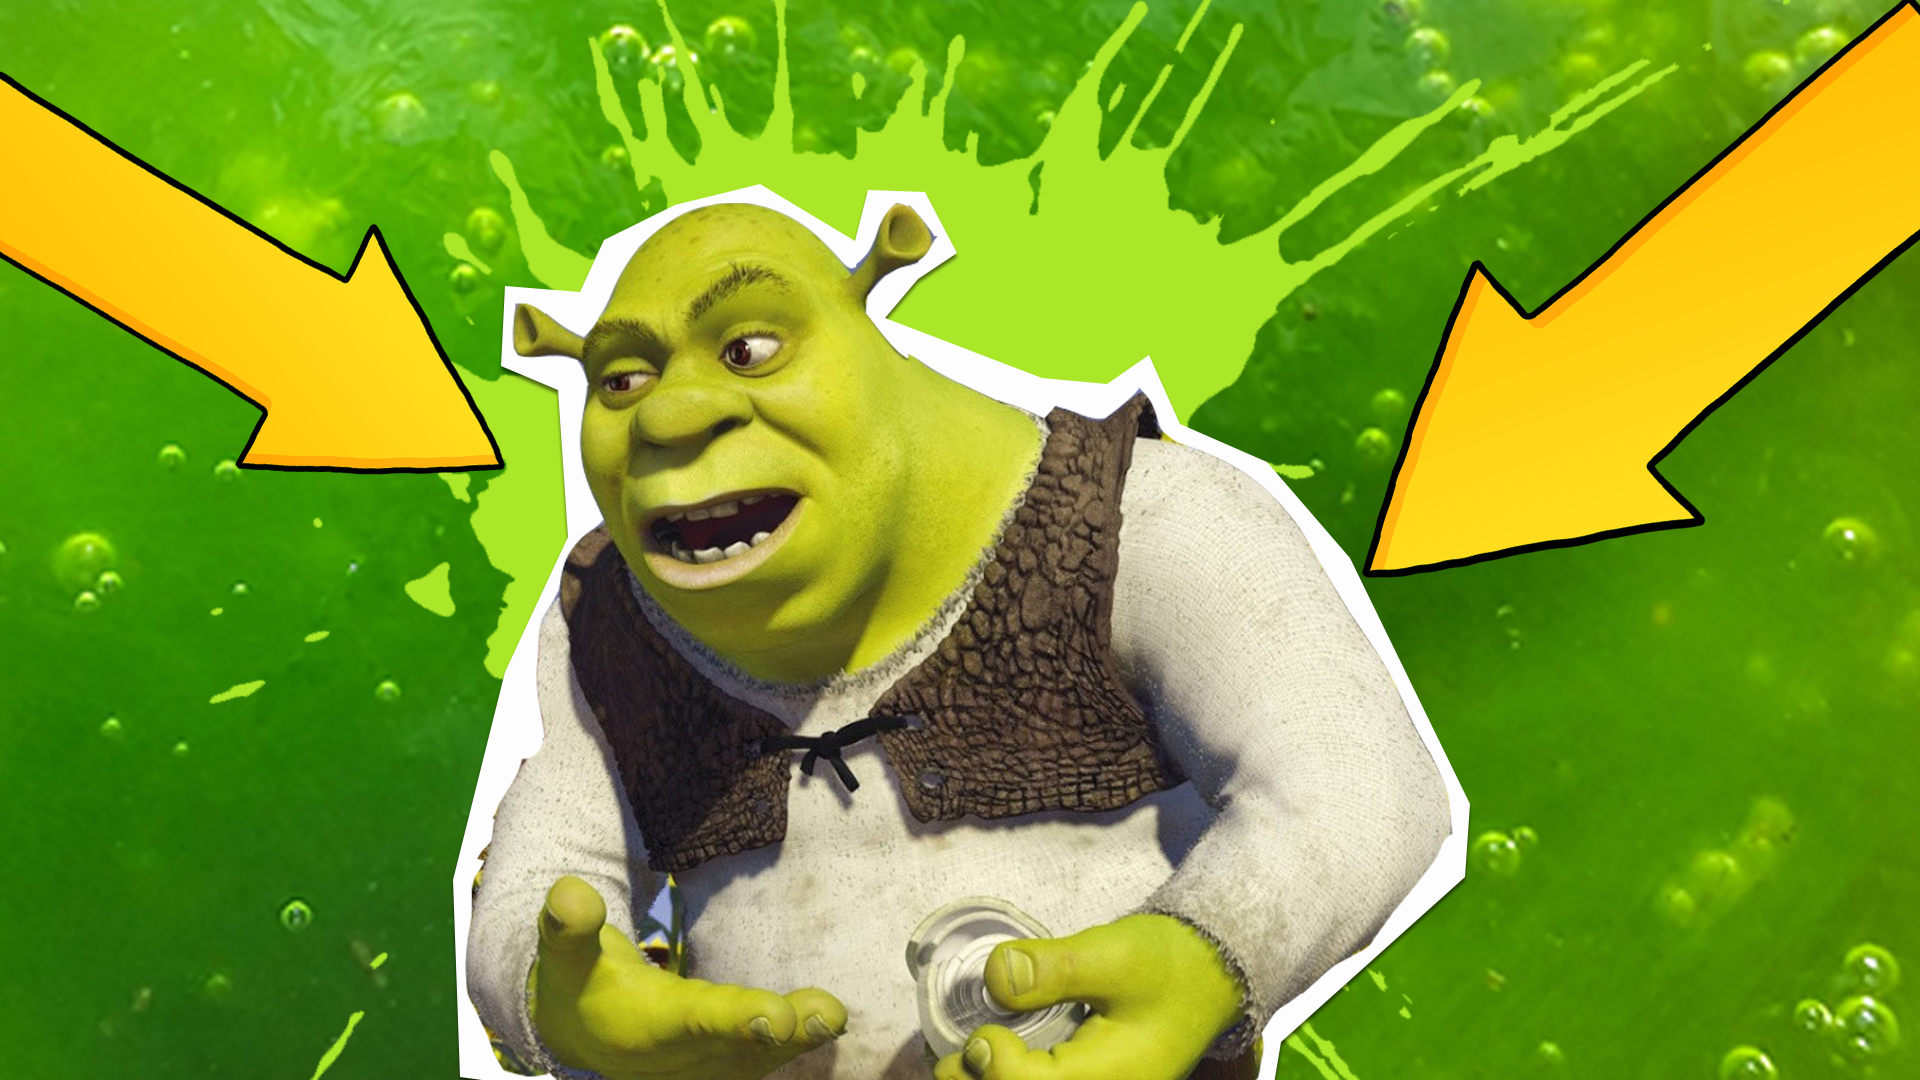 Shrek against a green slime background